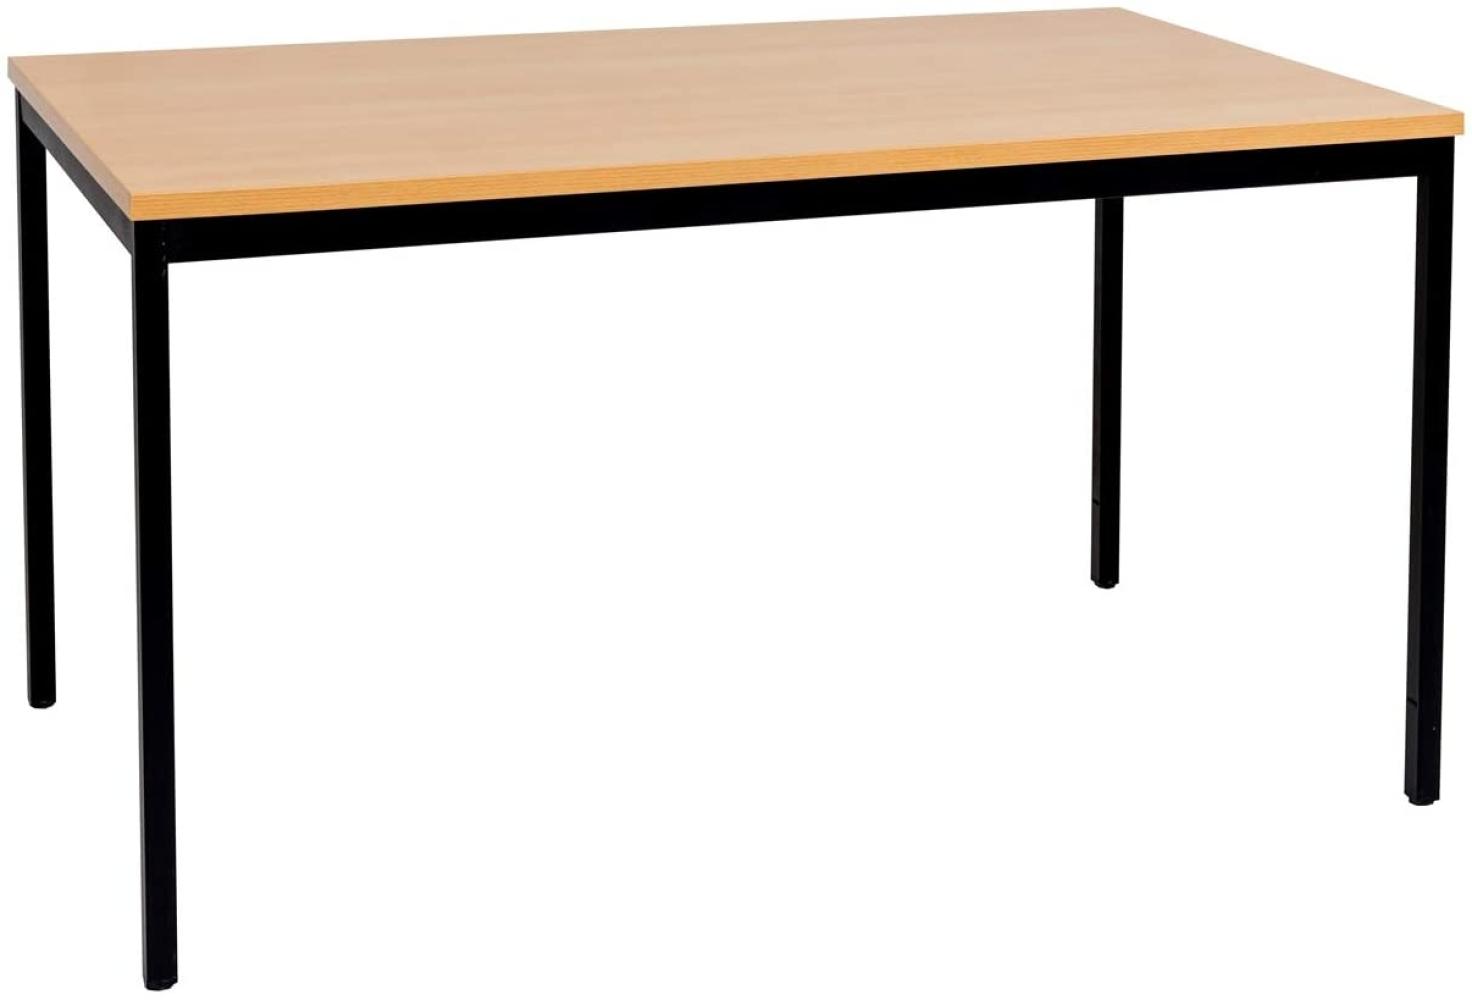 Furni24 Rechteckiger Universaltisch mit laminierter Platte Buche 160x80x75 cm, Metallgestell und niveauausgleichs Füßen, ideal im Homeoffice als Schreibtisch, Konferenztisch, Computertisch, Esstisch Bild 1